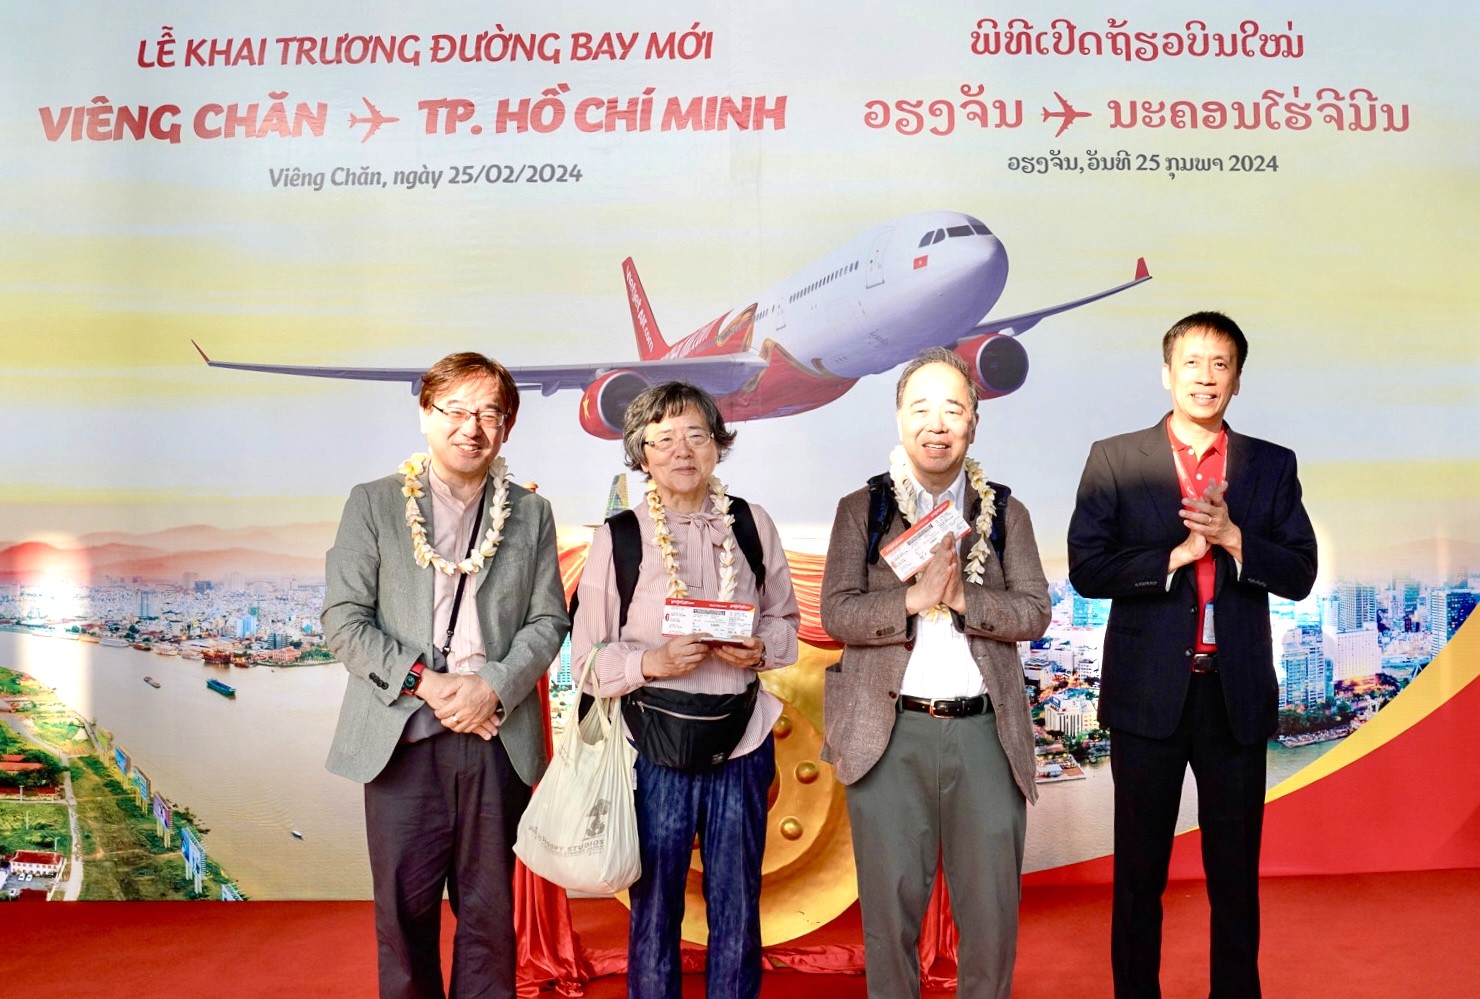 Phó Tổng giám đốc Vietjet Nguyễn Thanh Sơn tặng hoa và quà lưu niệm cho những hành khách đầu tiên 